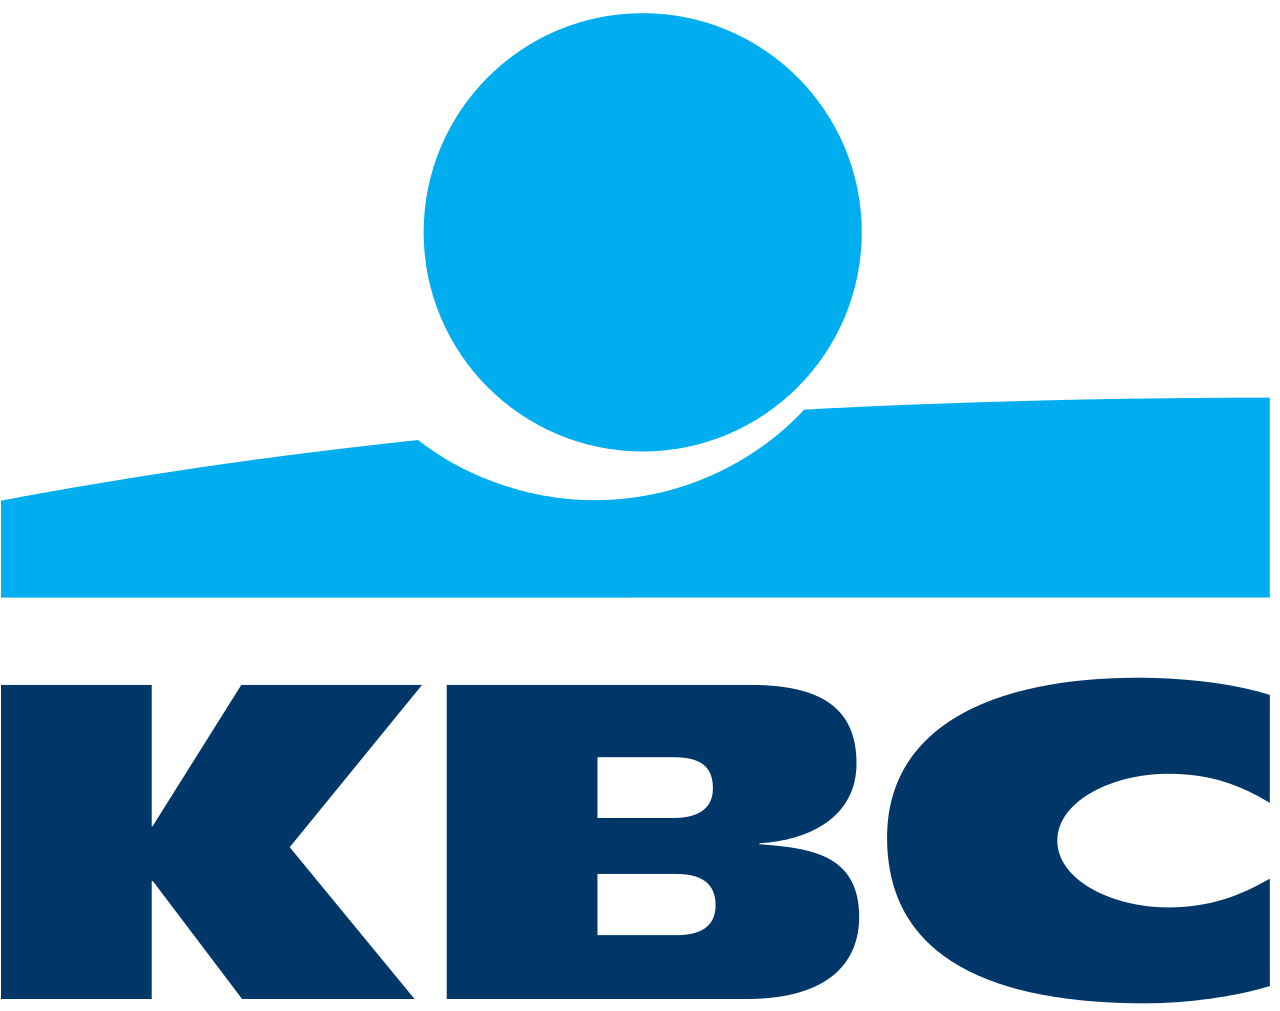 KBC_Bank_logo